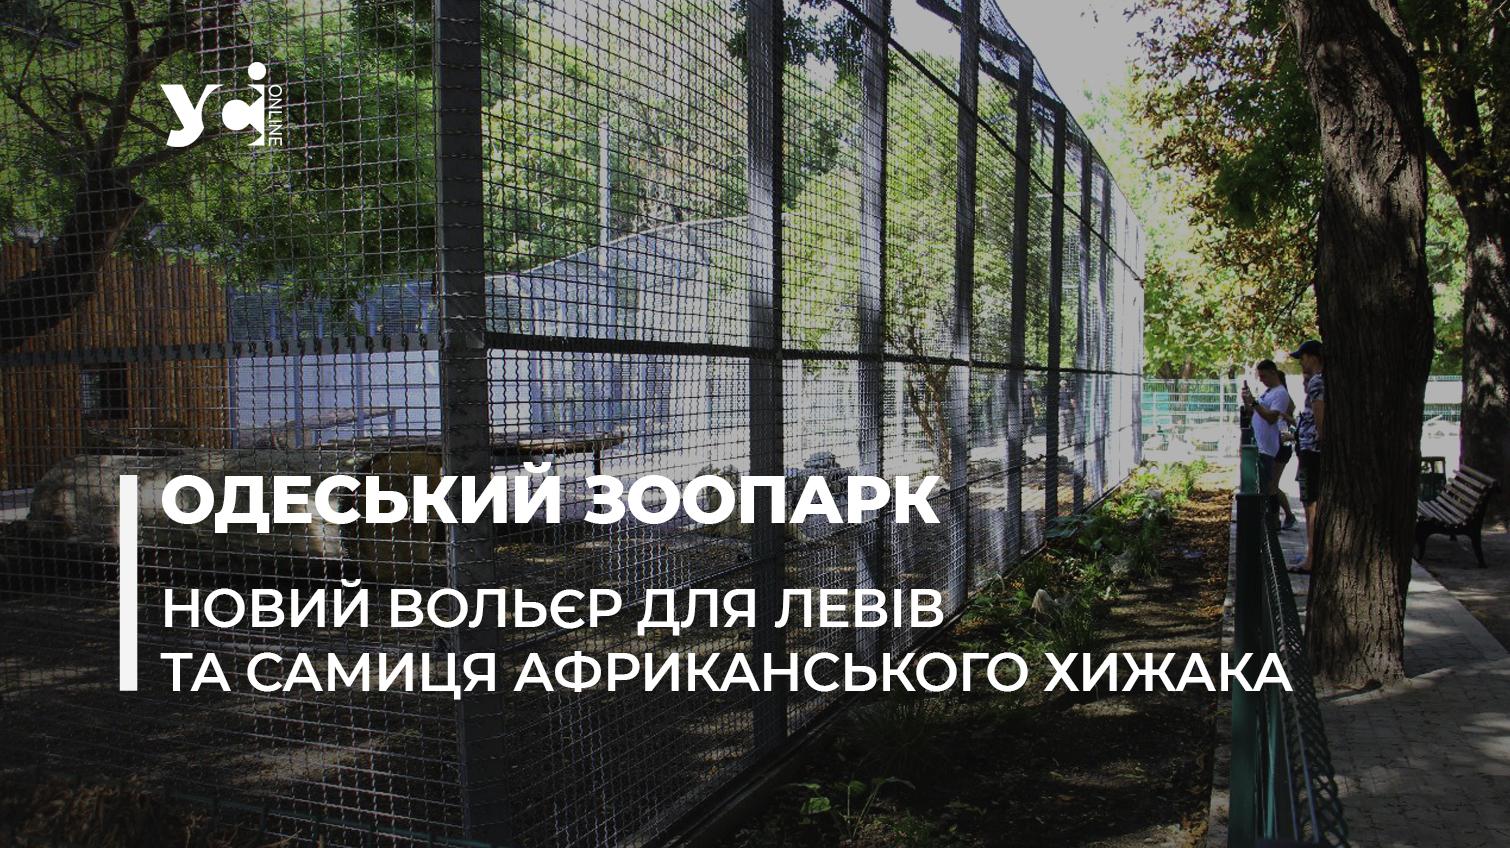 Новини Одеського зоопарку: новий вольєр для левів та хижак із Гостомеля (фото, відео) «фото»